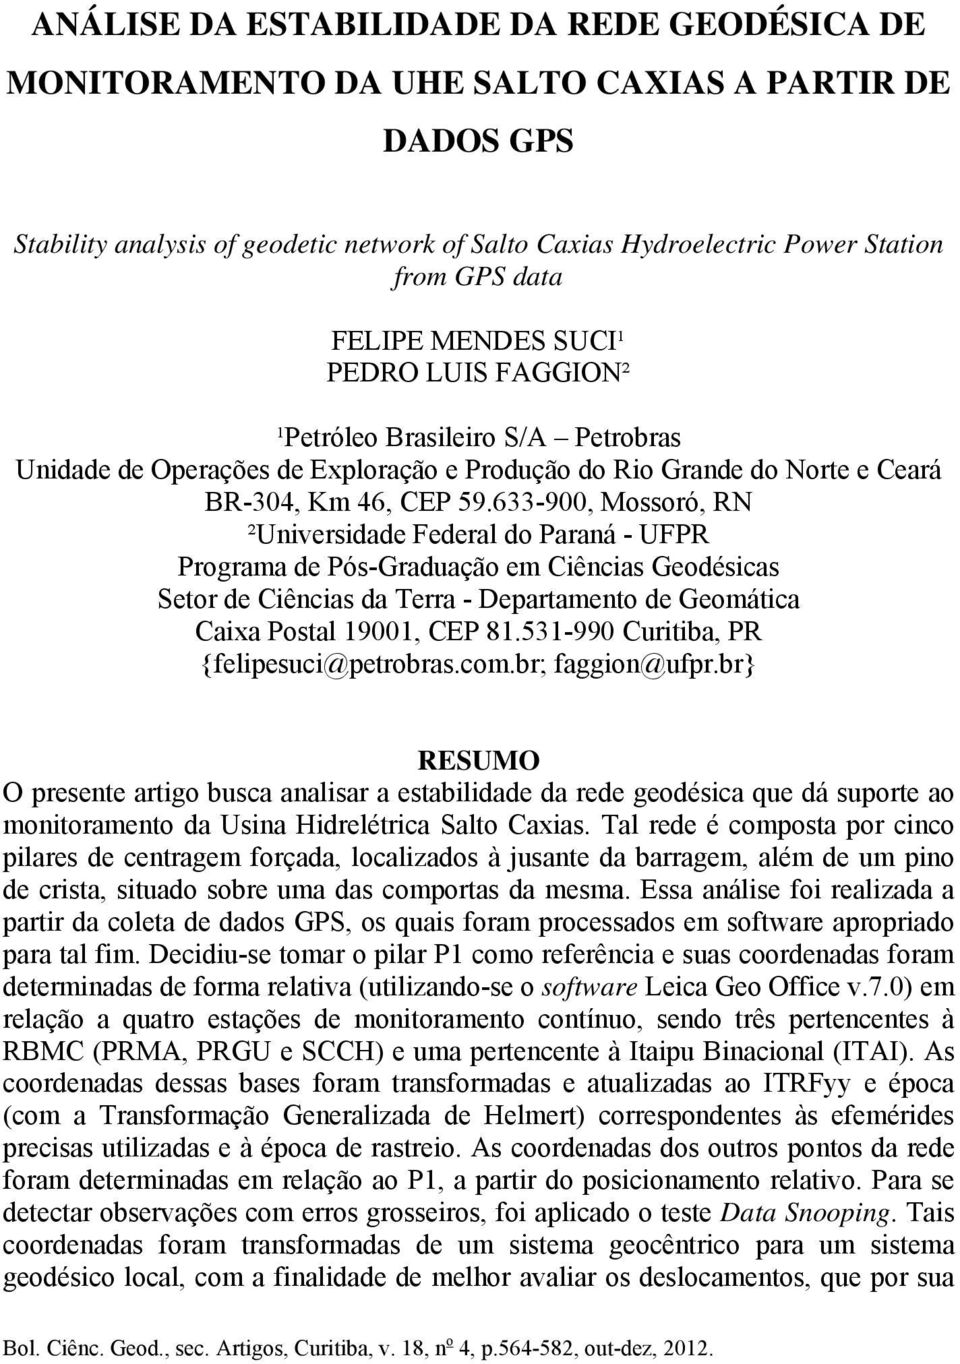 633-900, Mossoró, RN ²Universidade Federal do Paraná - UFPR Programa de Pós-Graduação em Ciências Geodésicas Setor de Ciências da Terra - Departamento de Geomática Caixa Postal 19001, CEP 81.